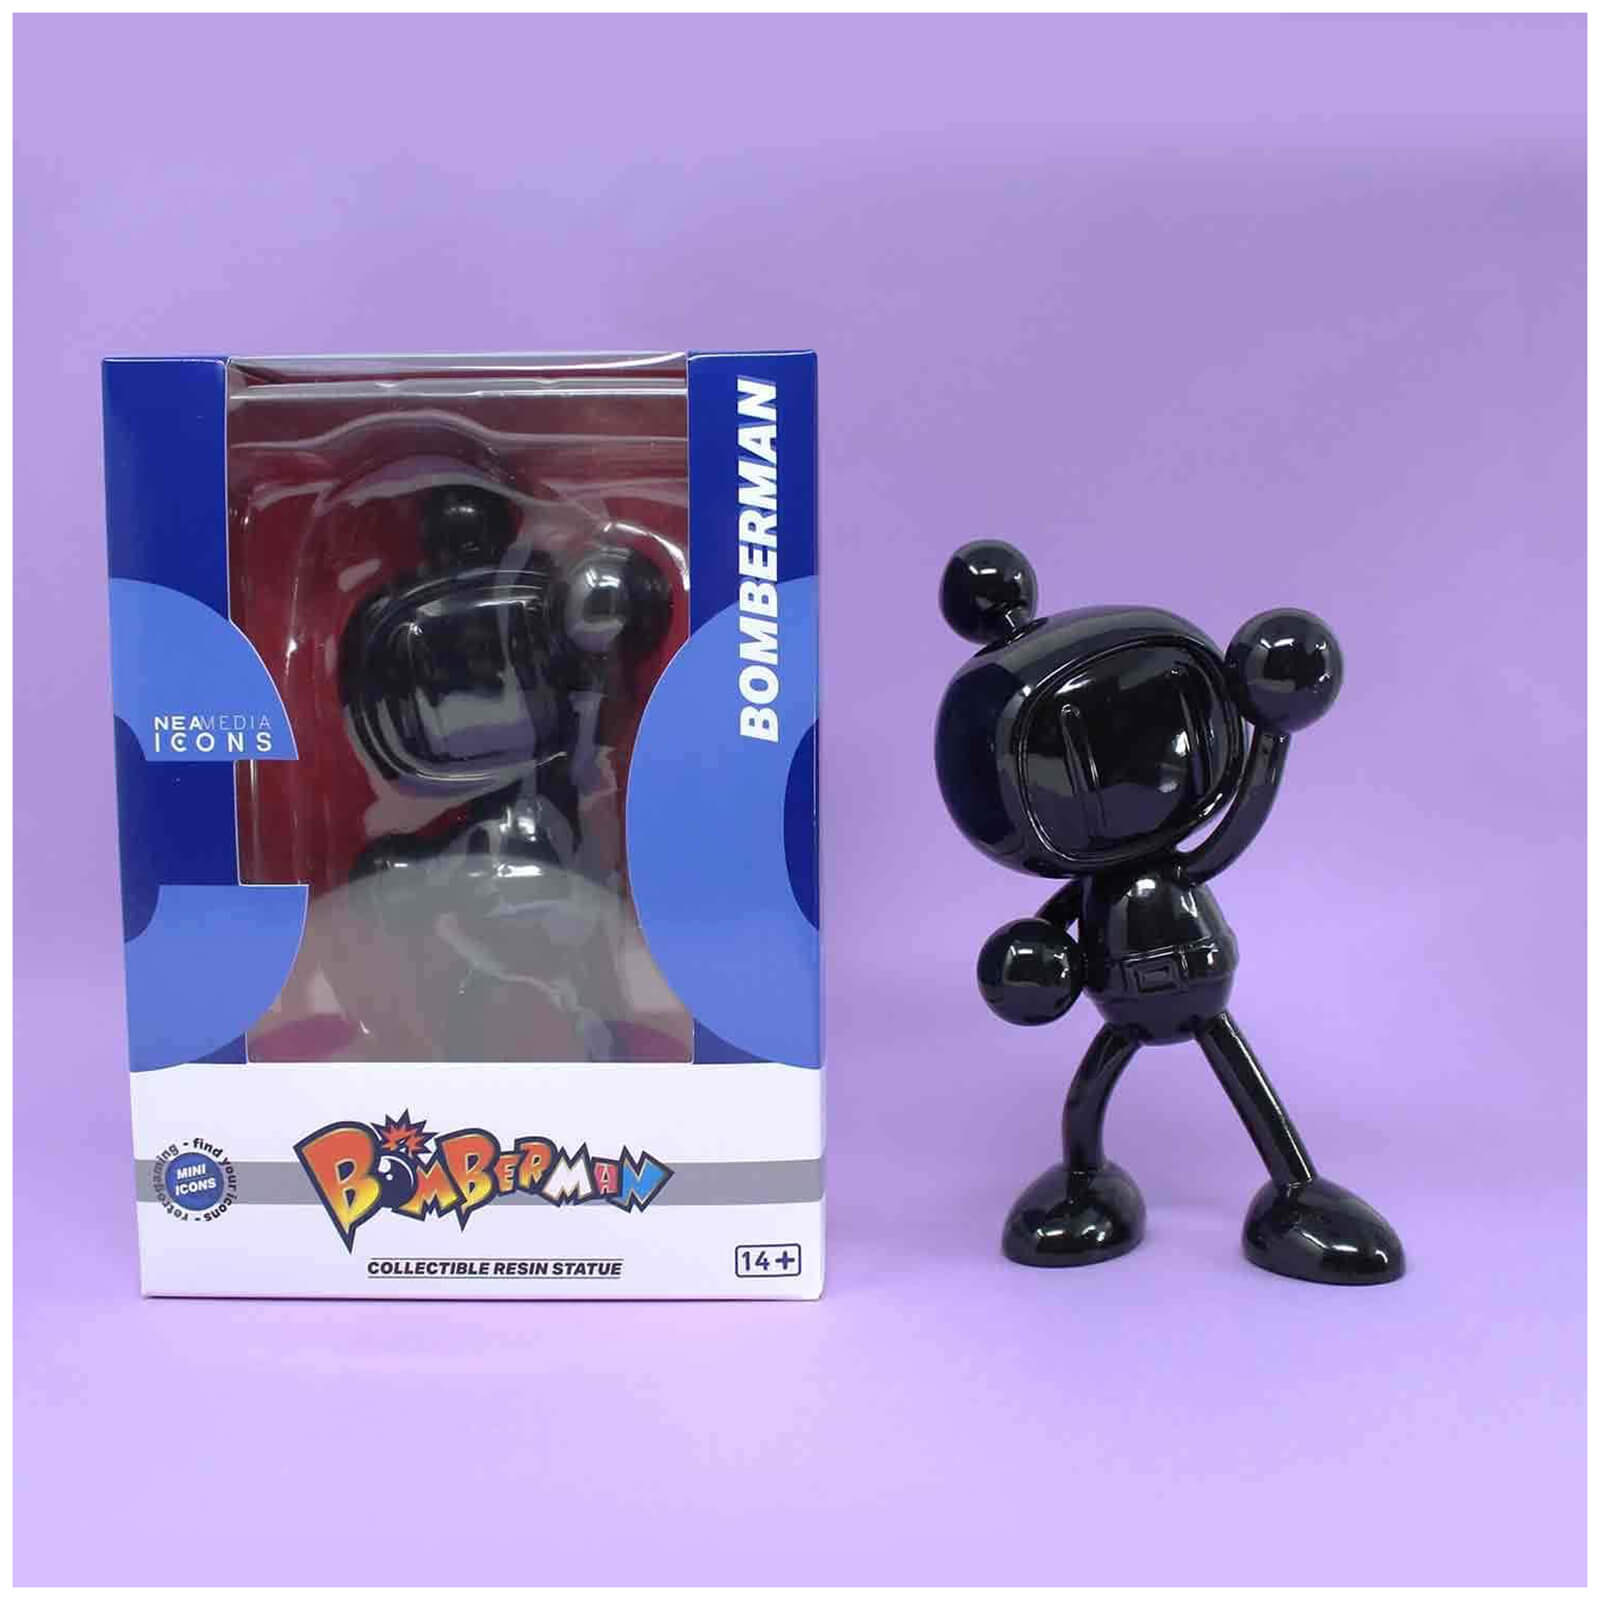 Mini Icons Bomberman 15cm Resin Figure - Black